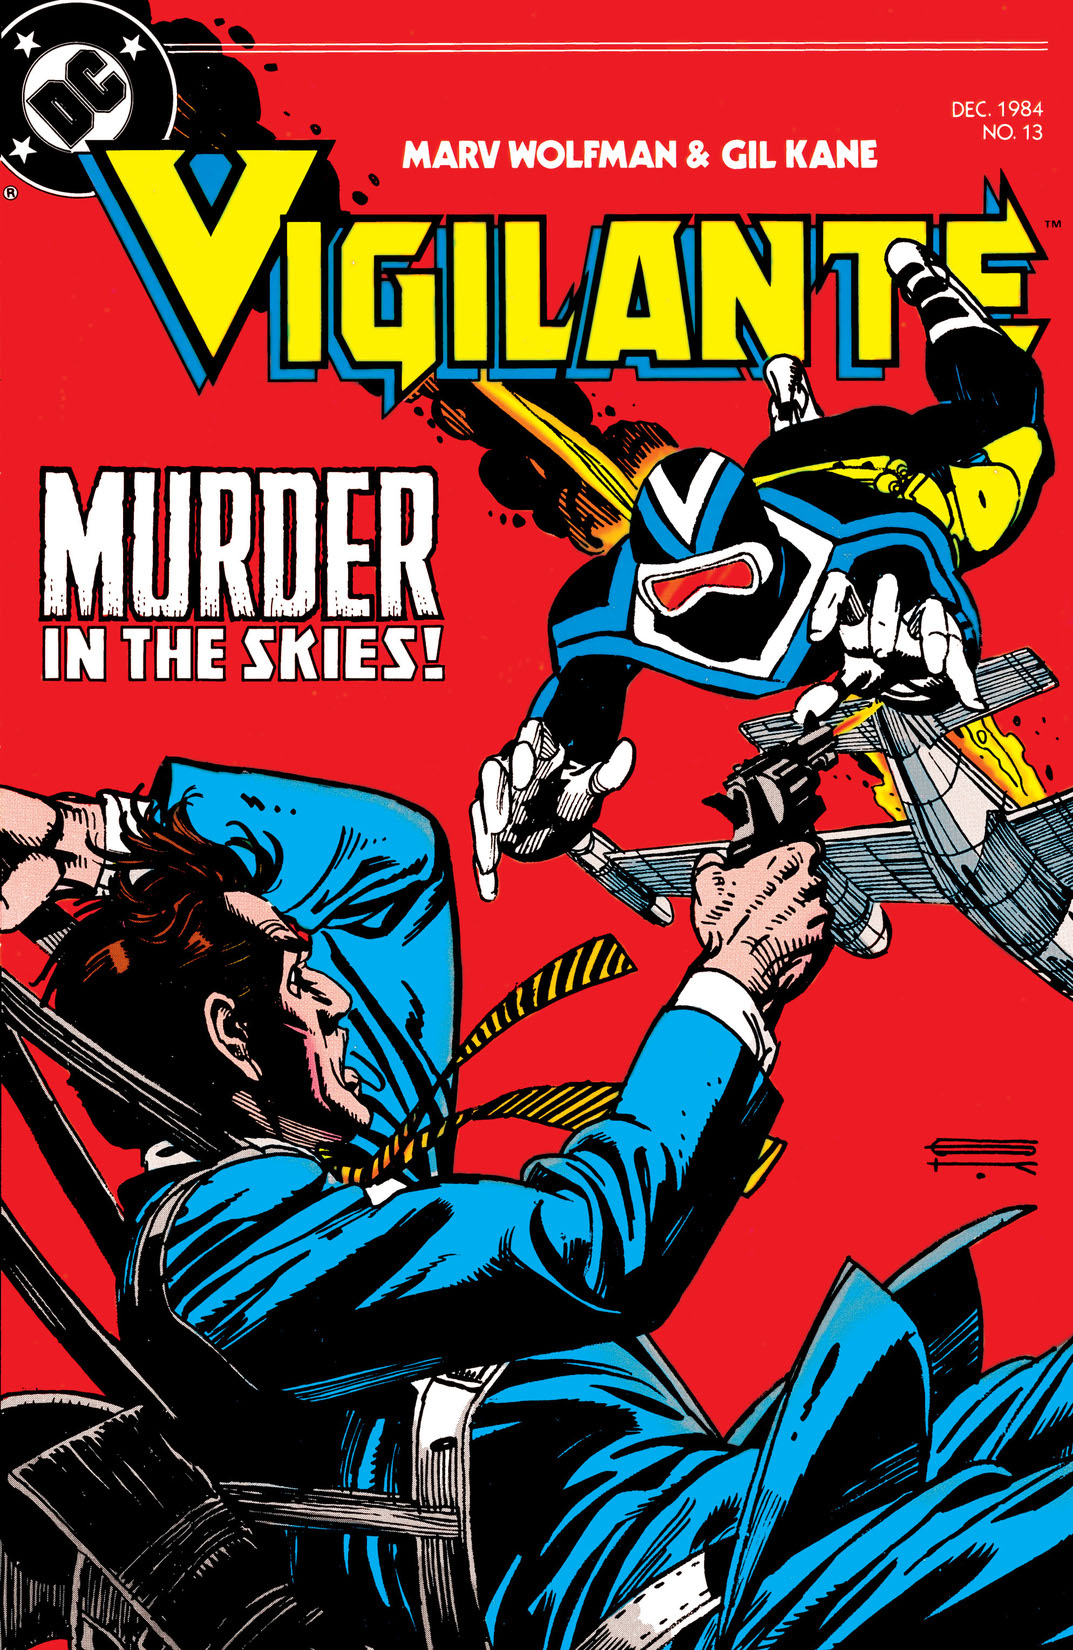 The Vigilante #13 preview images